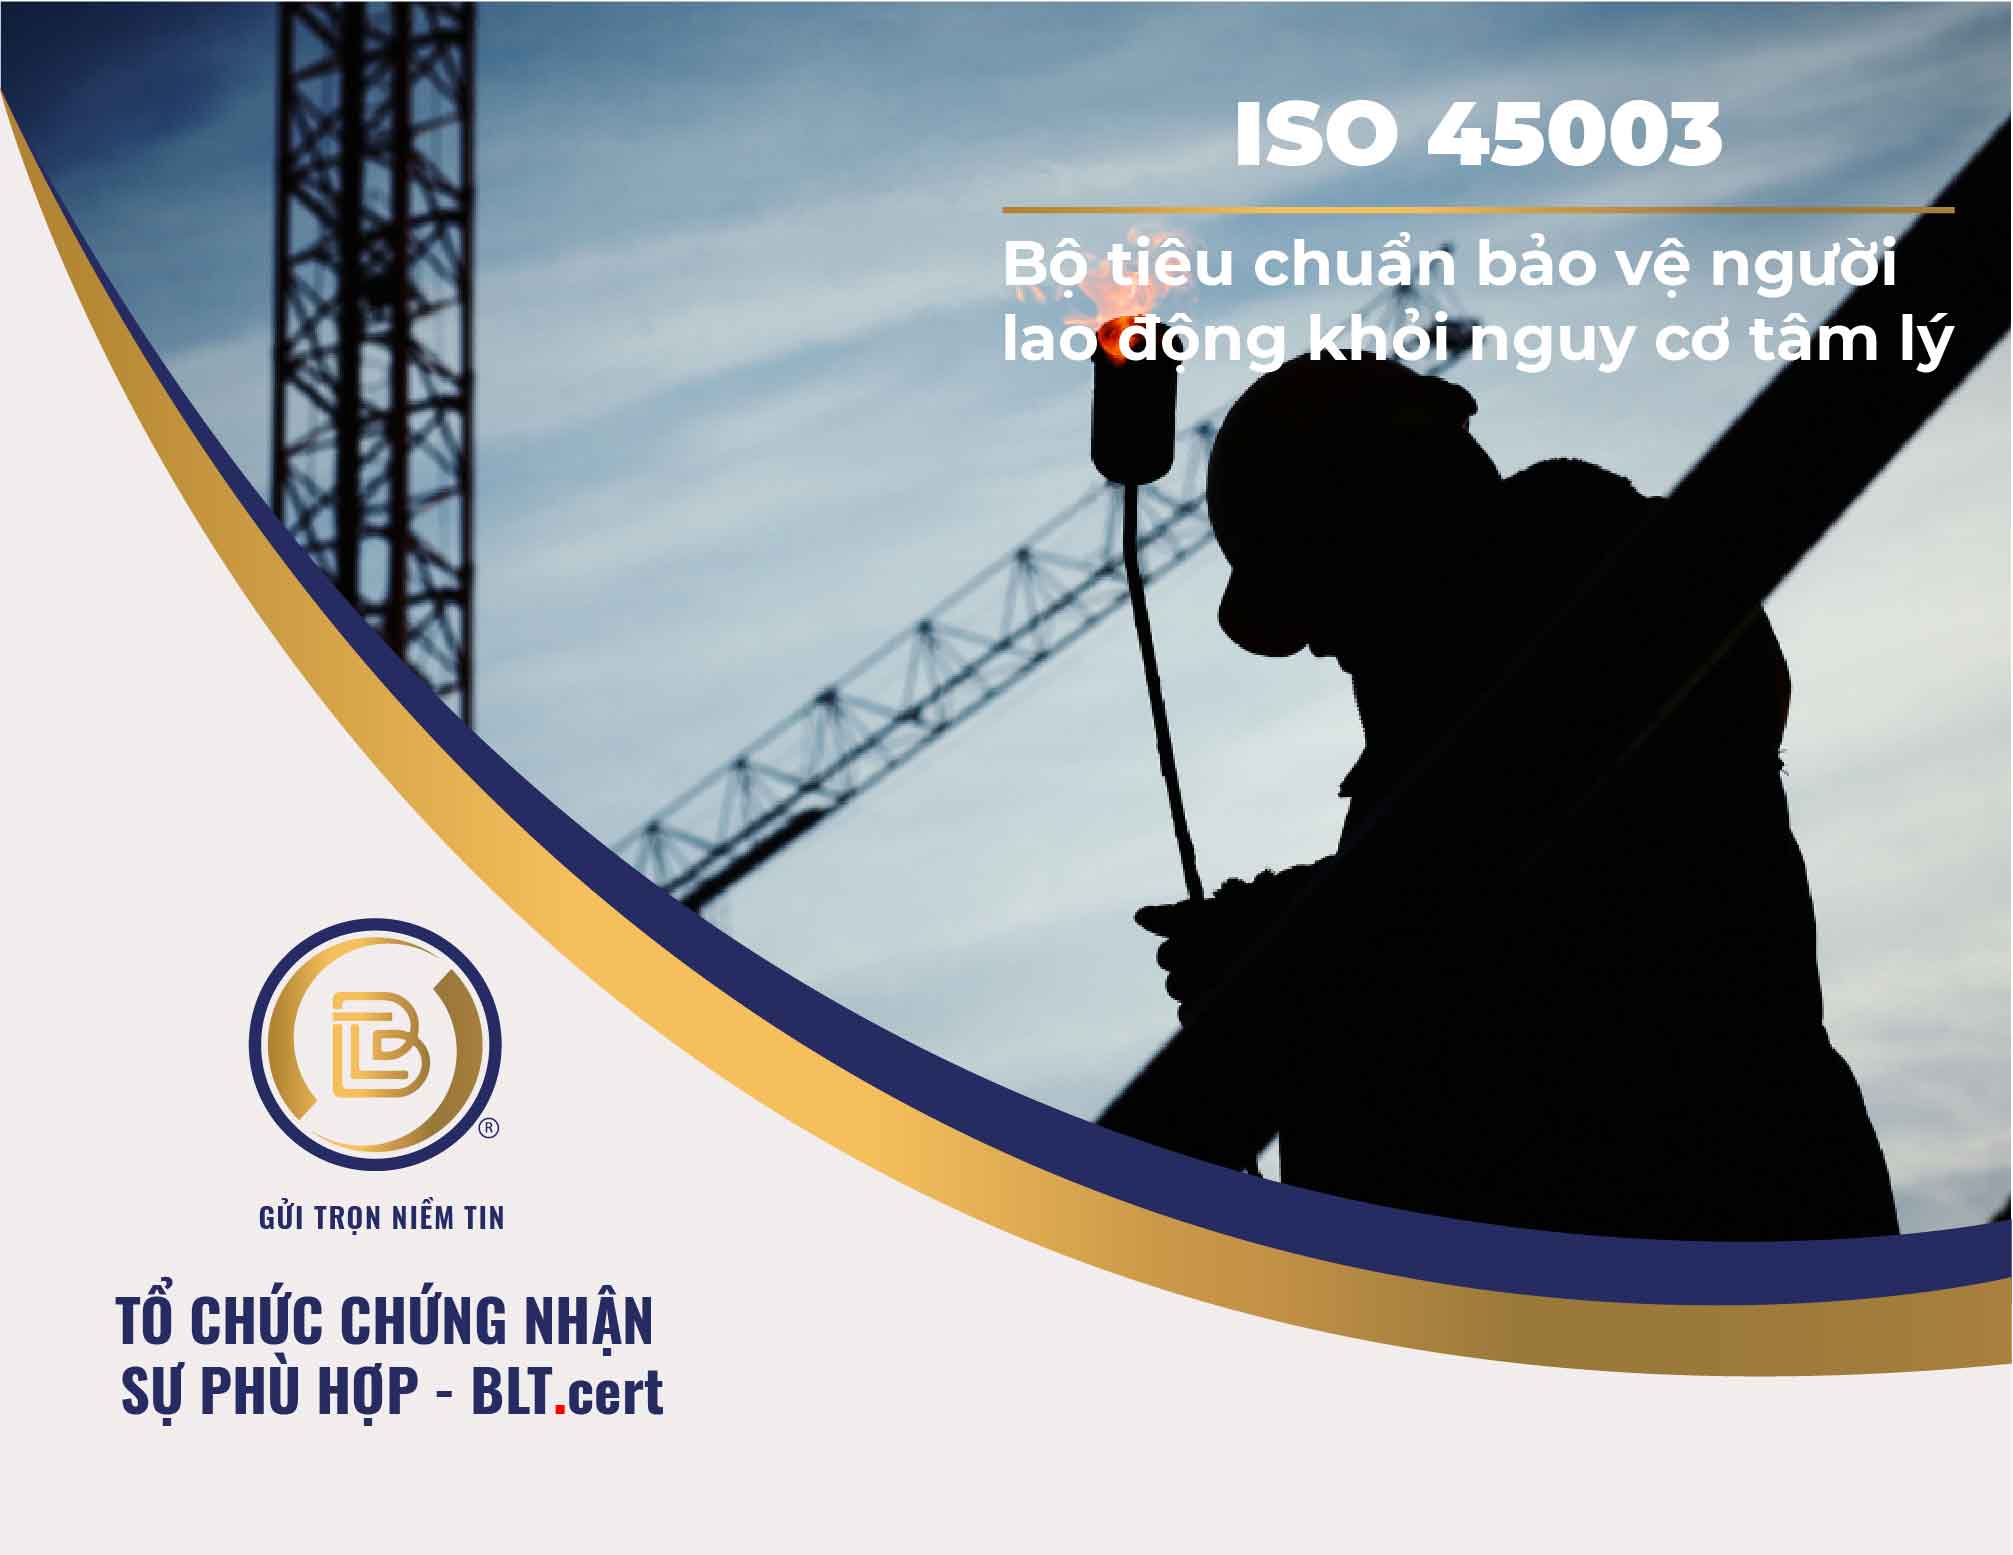 ISO 45003: Bộ tiêu chuẩn bảo vệ người lao động khỏi nguy cơ tâm lý